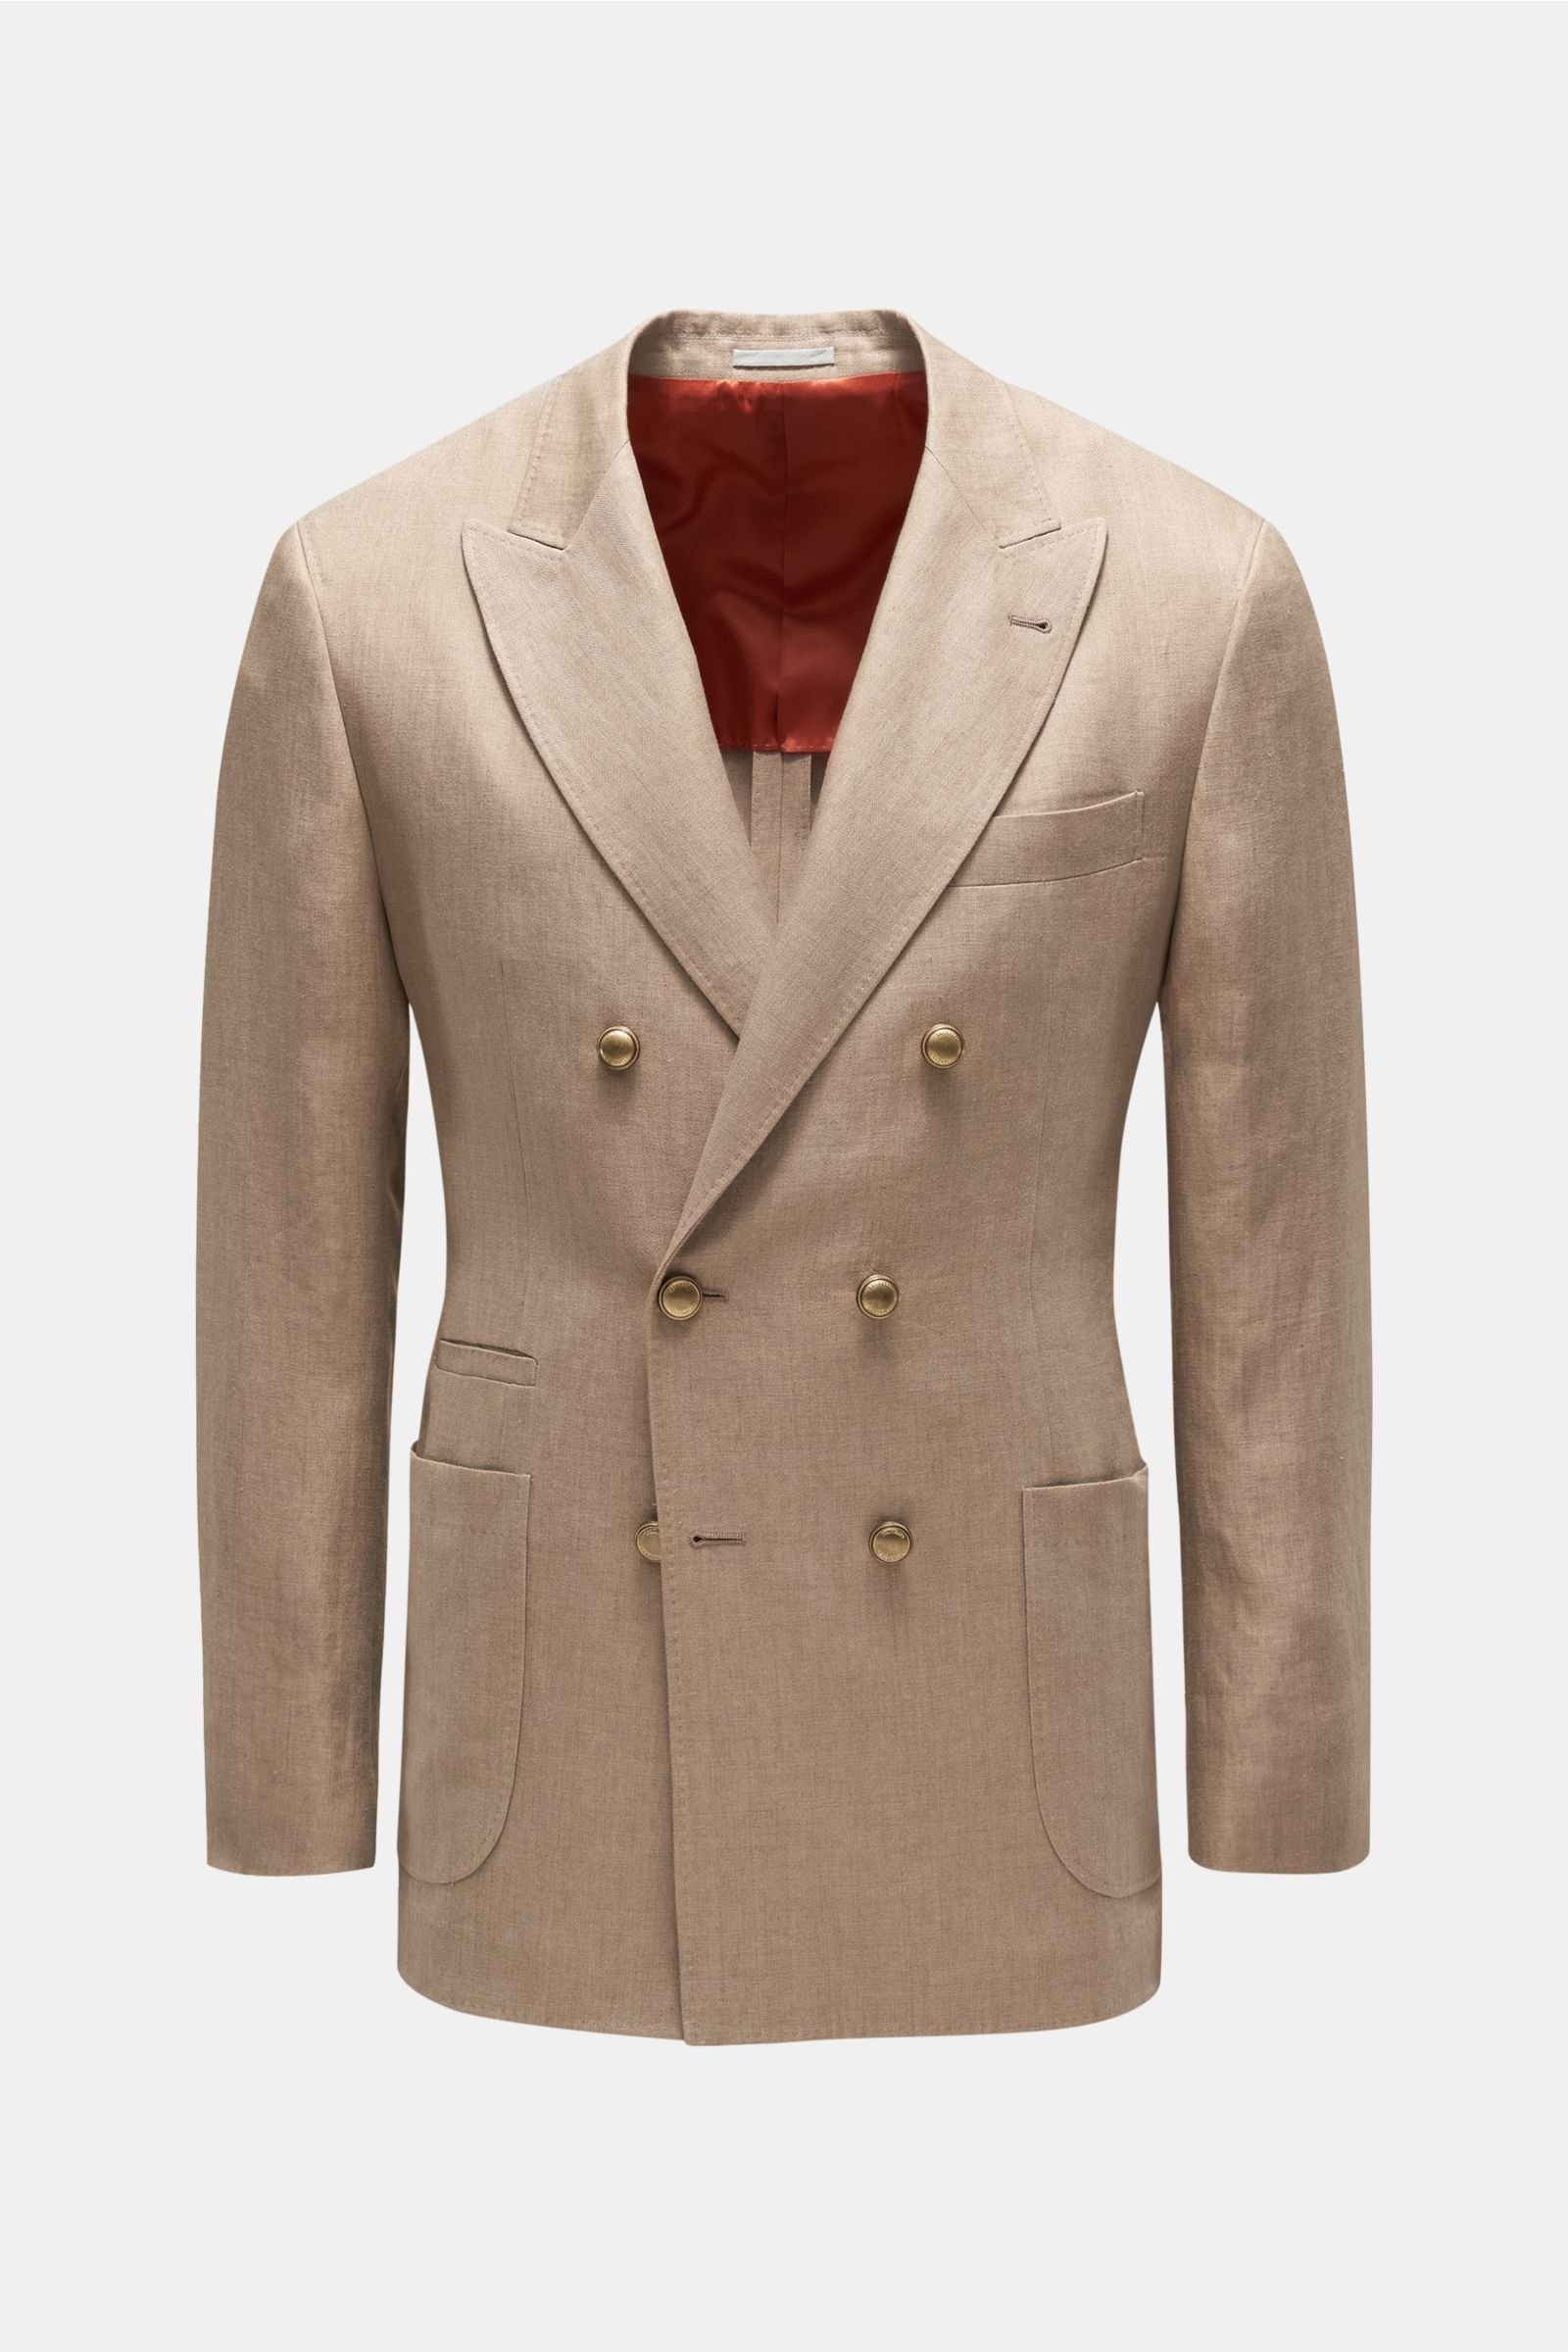 Linen jacket light brown